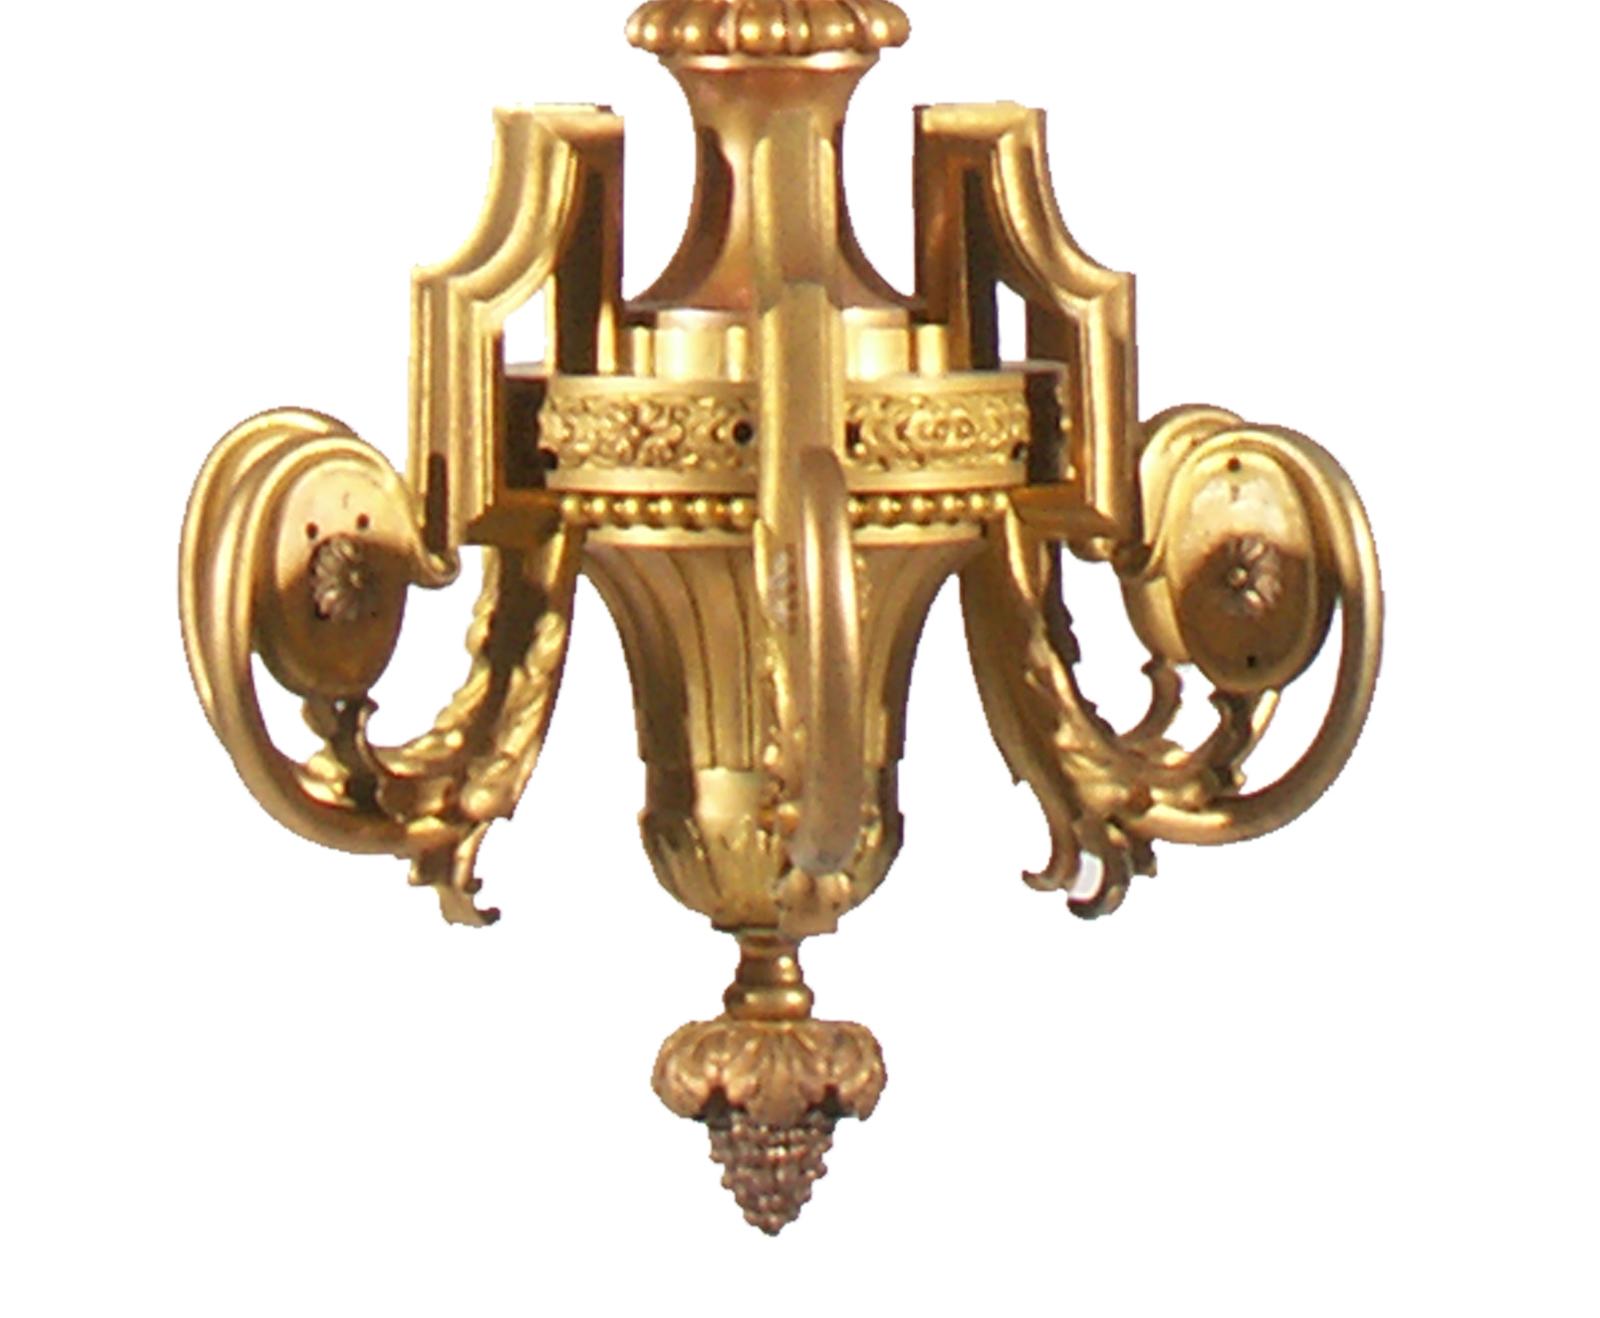 Original 19th Century Bronze Lighting Sculpture Historicism Baroque Chandelier For Sale 1